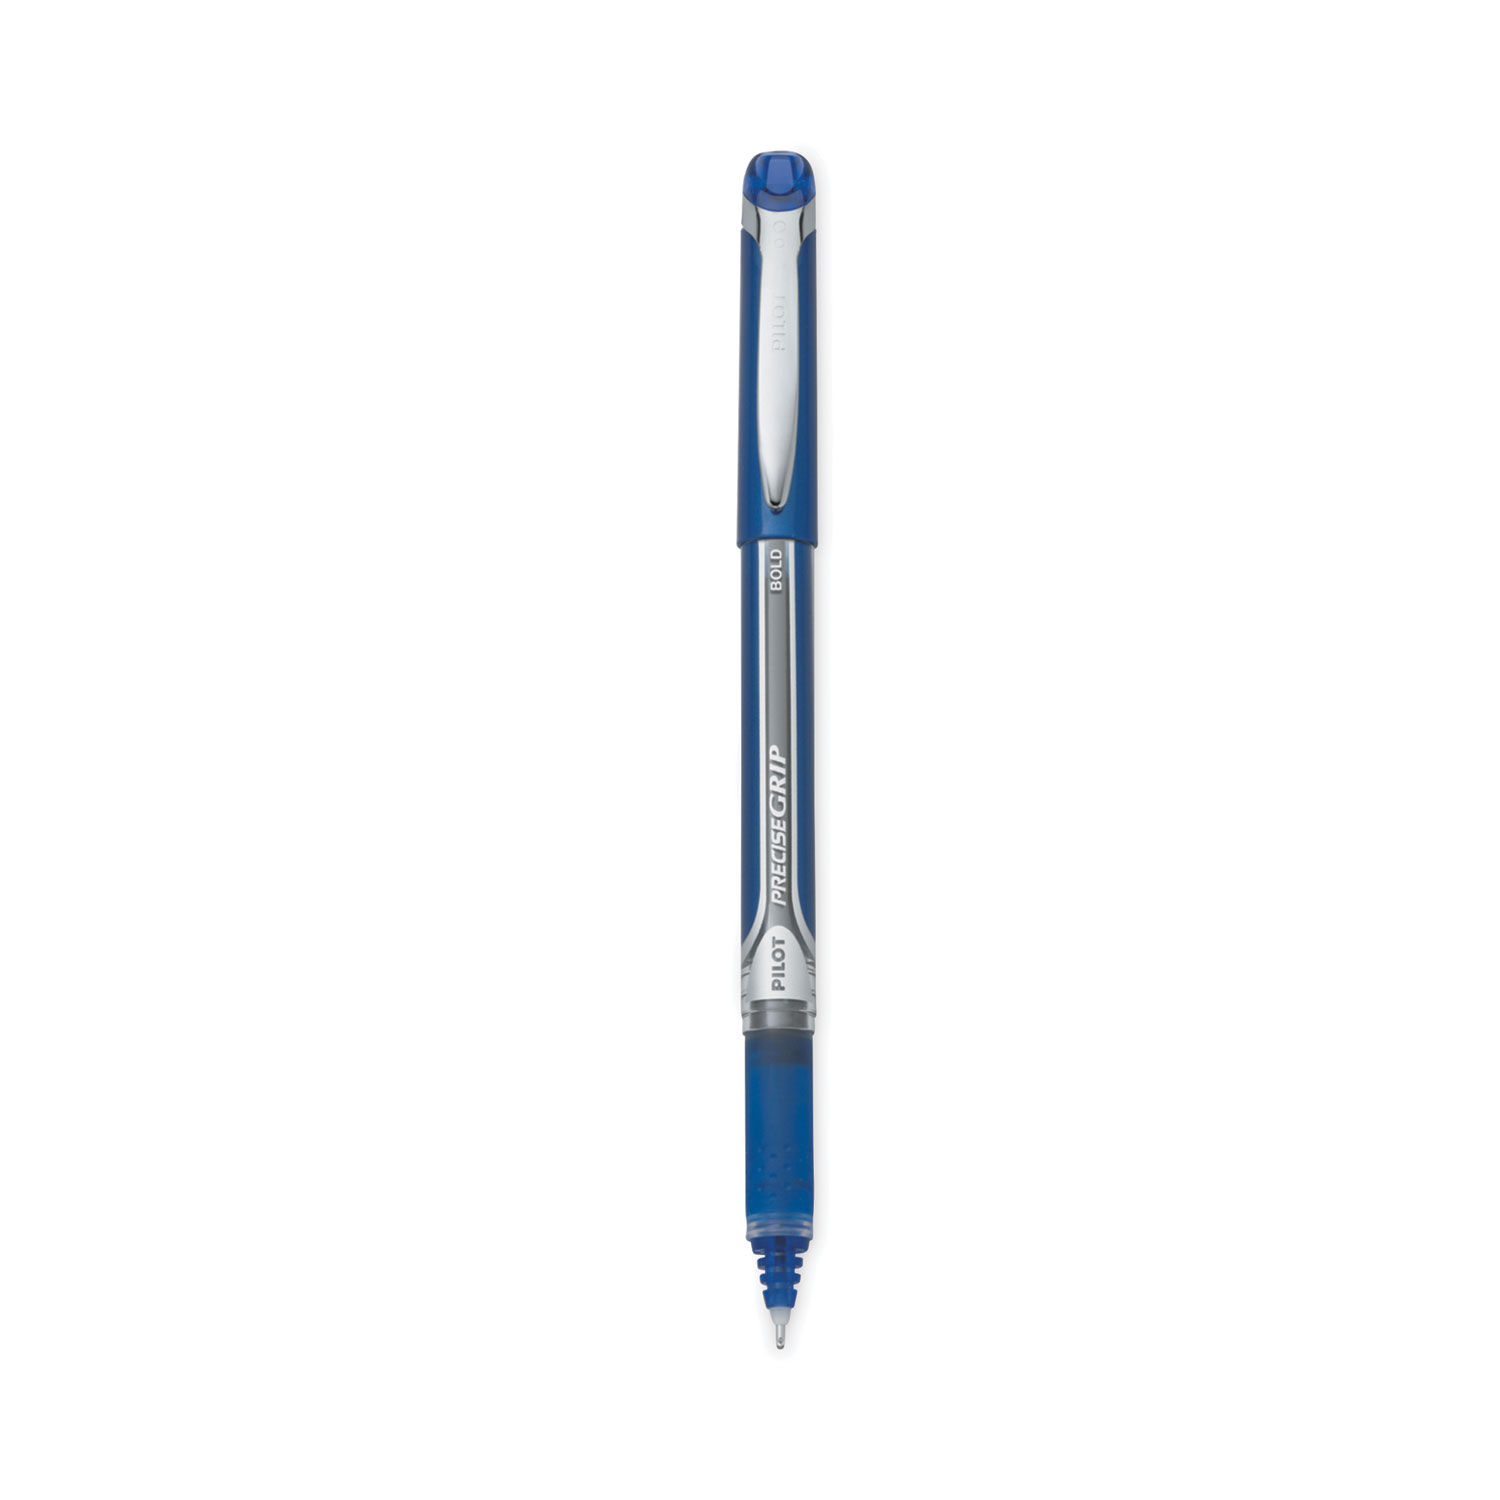 Precise Grip Roller Ball Pen Stick, Bold 1 mm, Blue Ink, Blue Barrel